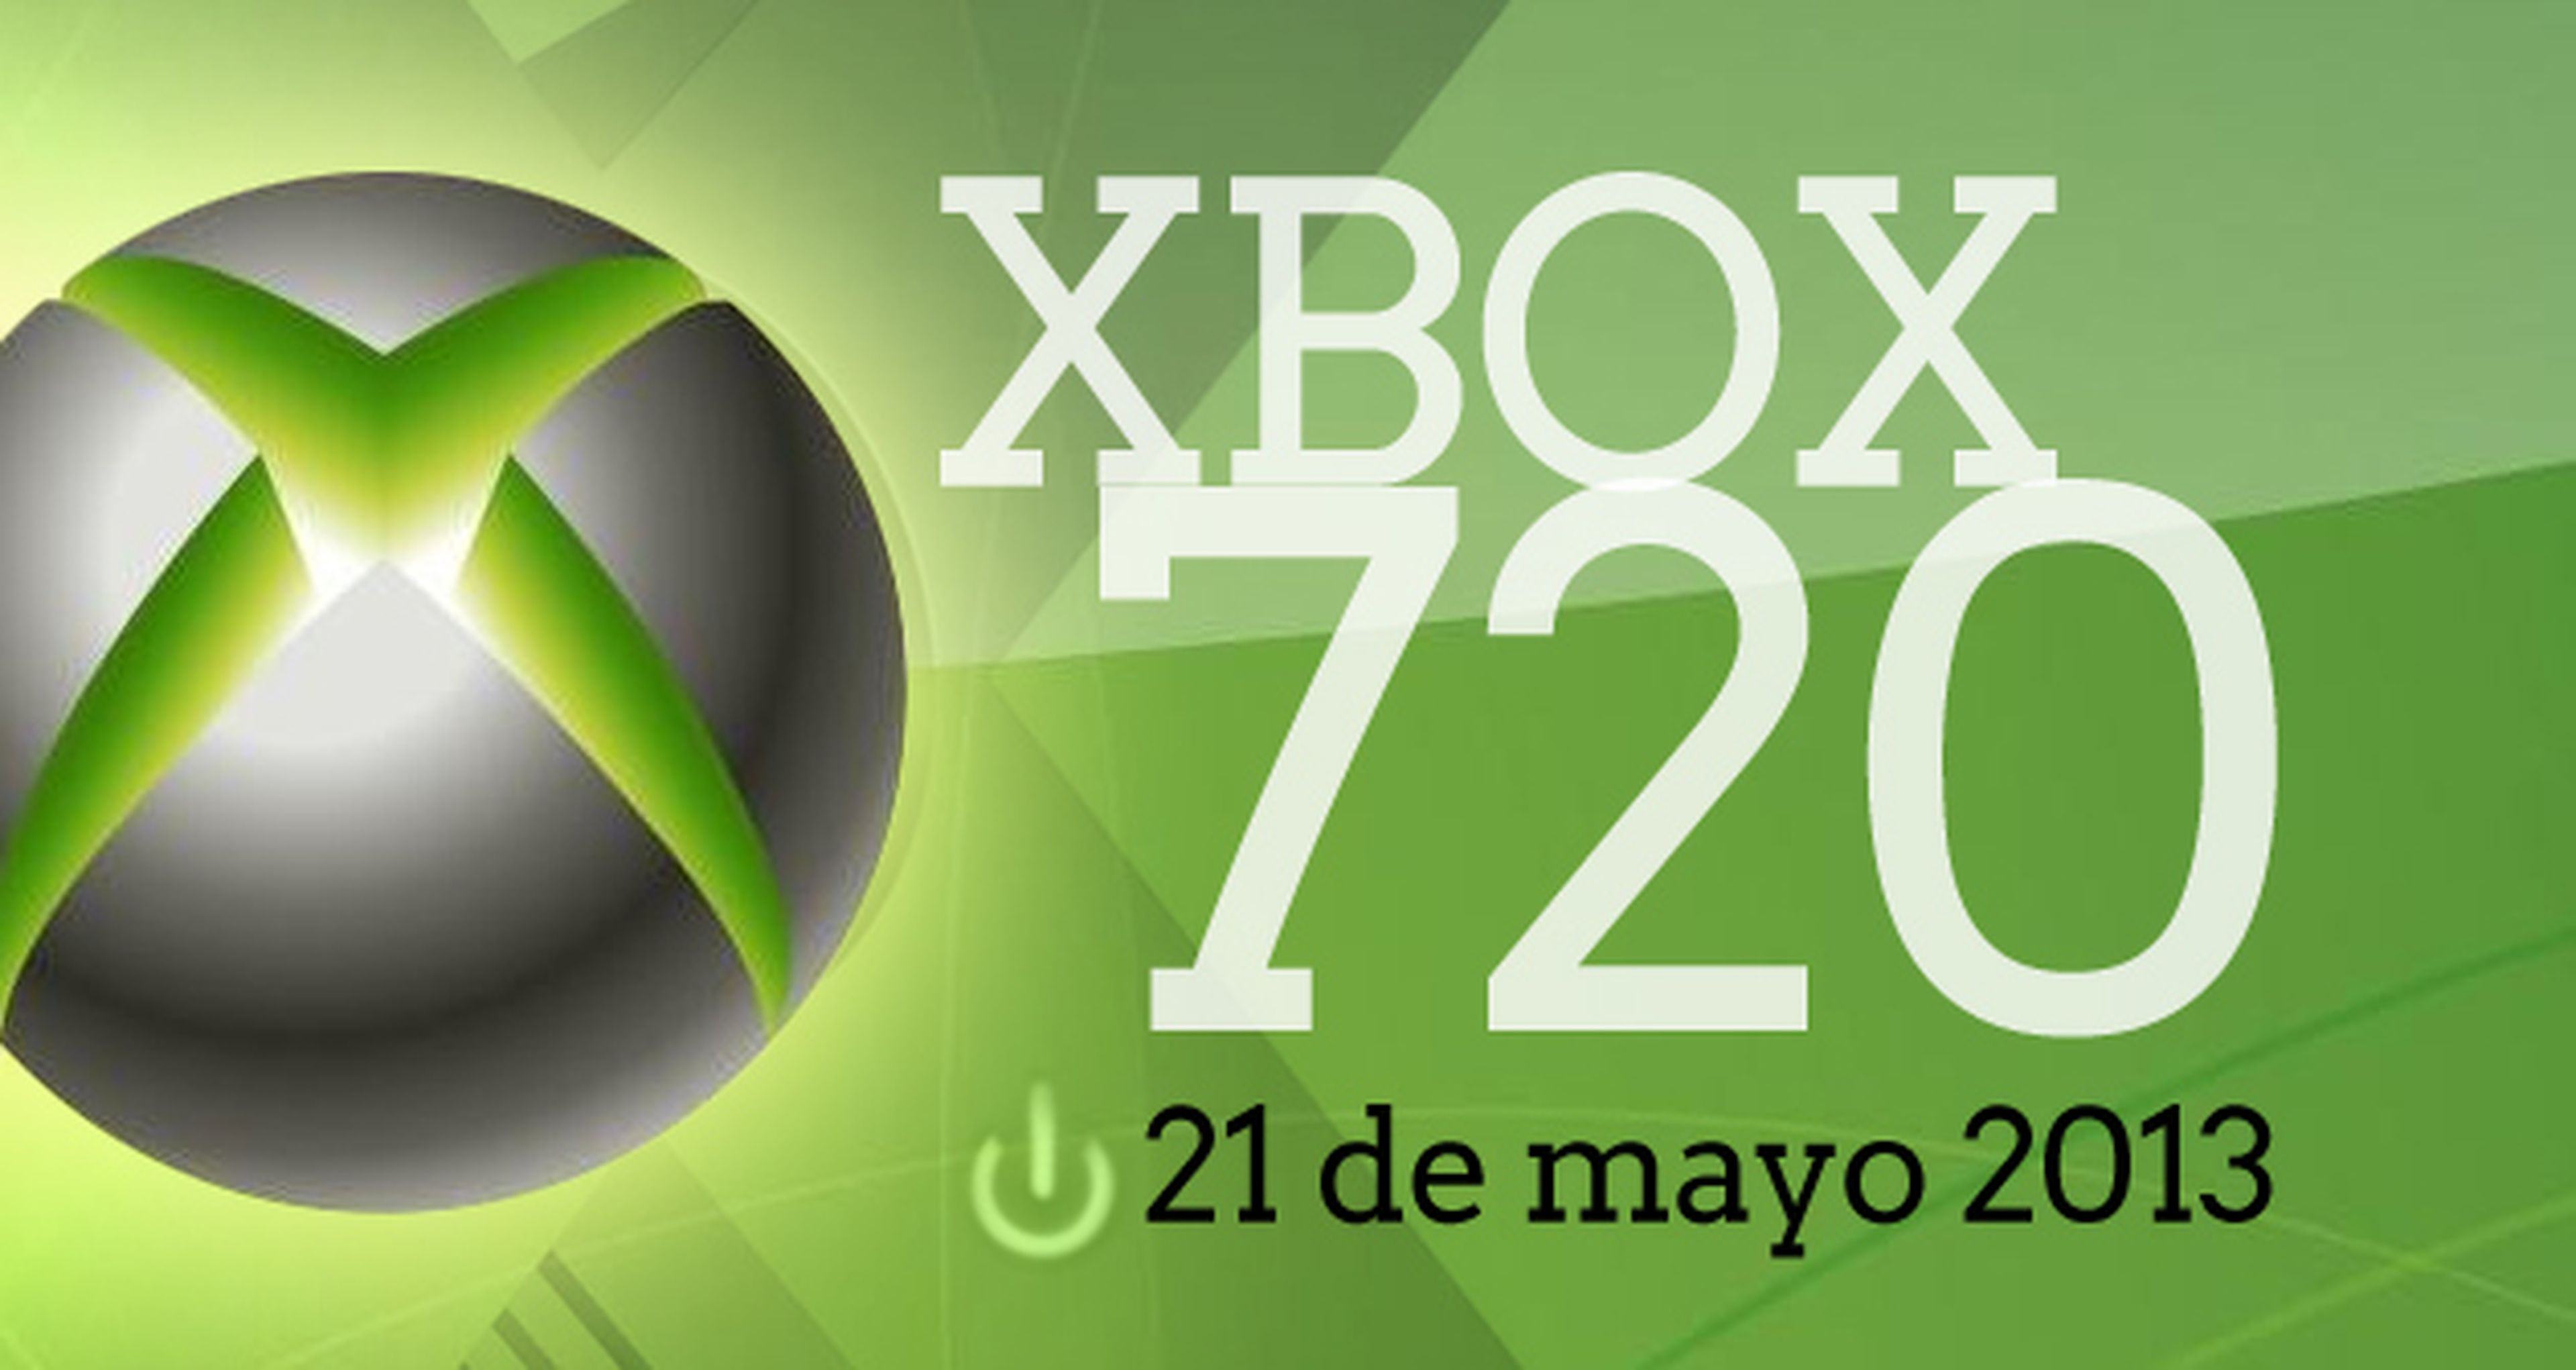 Xbox 720 se presentará el 21 de mayo